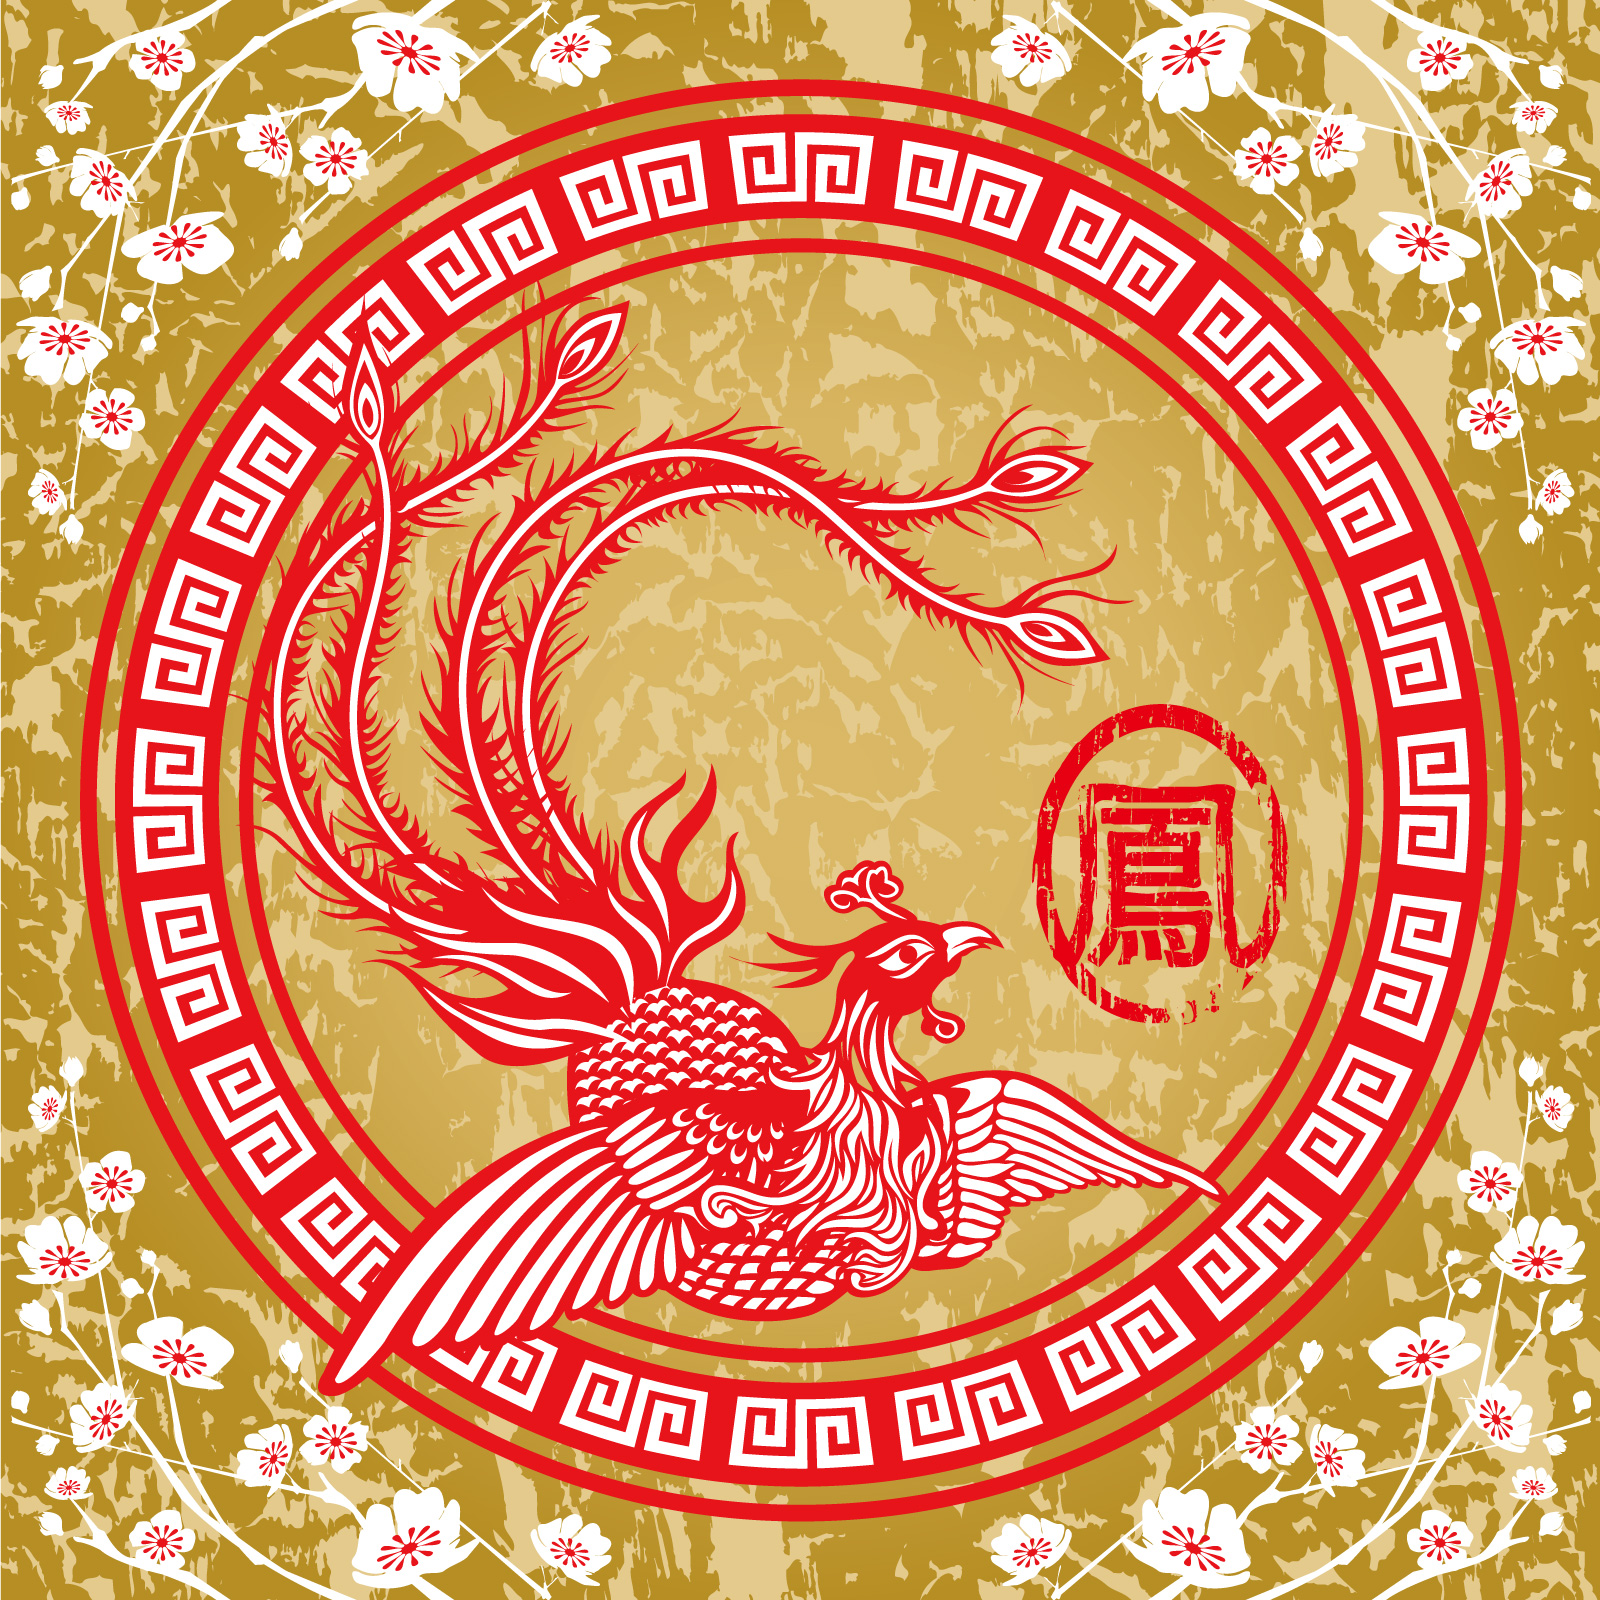 16 птичек на китайском. Красный Феникс фен шуй. Феникс символ Китая. Фэн-шуй дракон и птица Феникс. Дракон и Феникс фэн шуй.